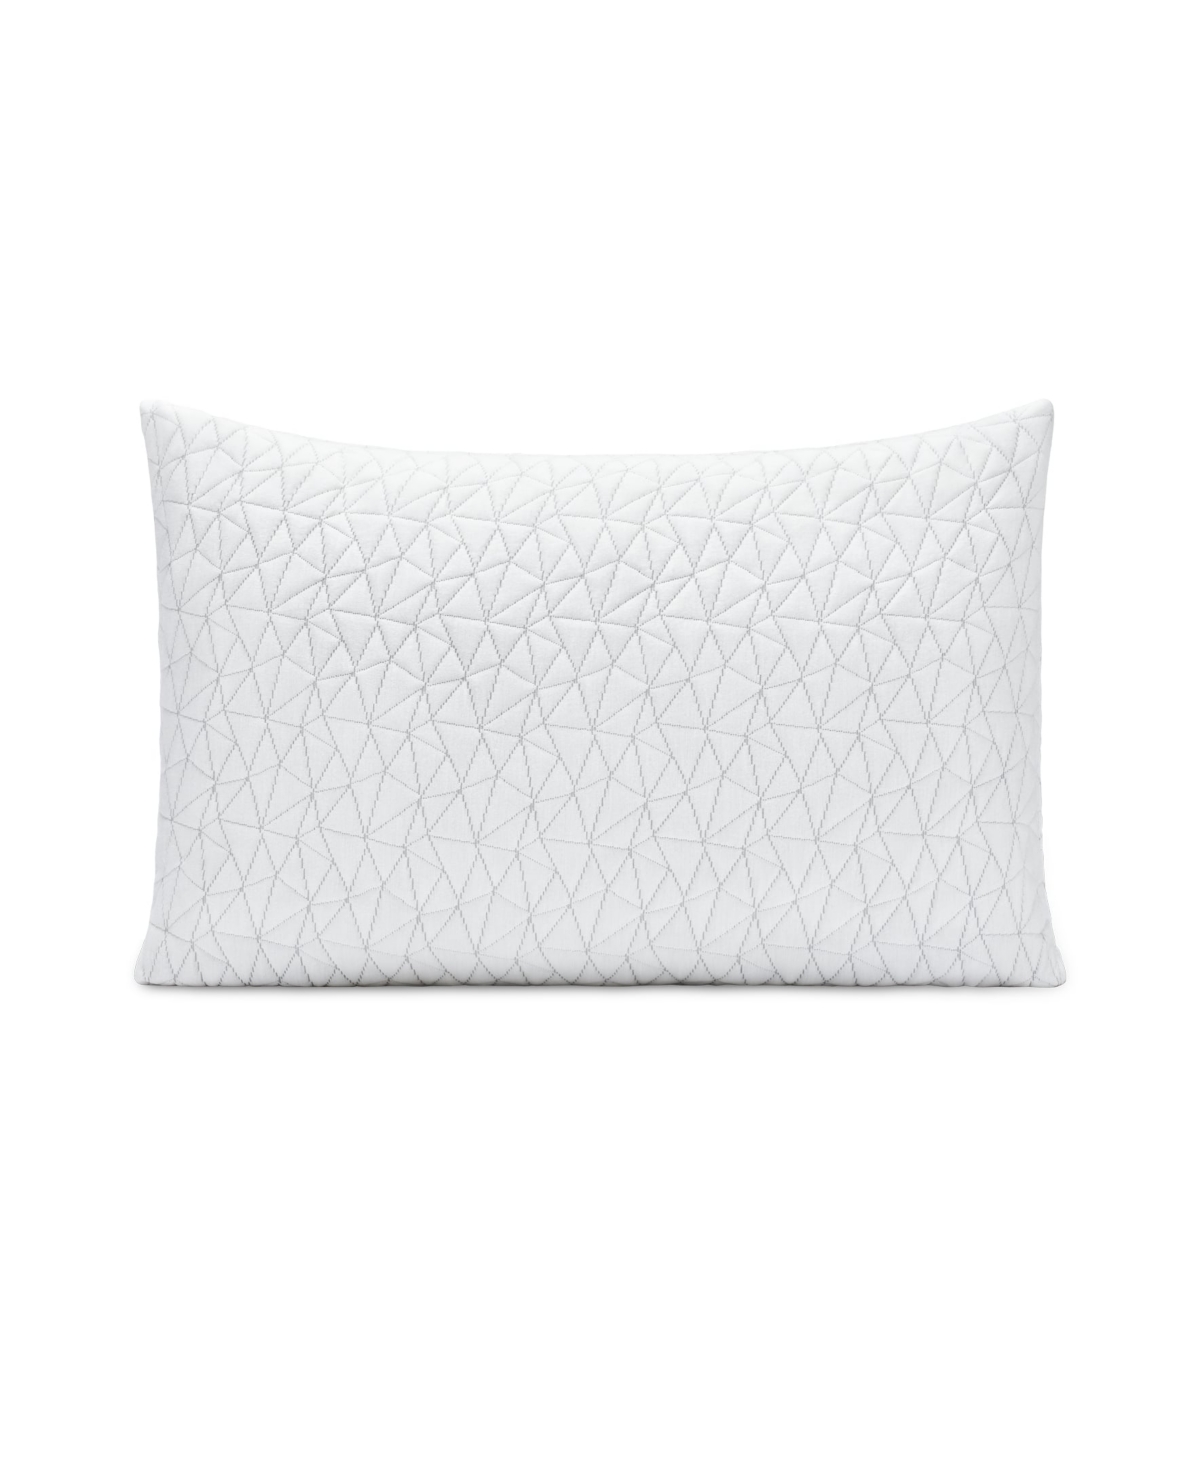 Shop Coop Sleep Goods The Original Adjustable Memory Foam Pillow, Queen In White